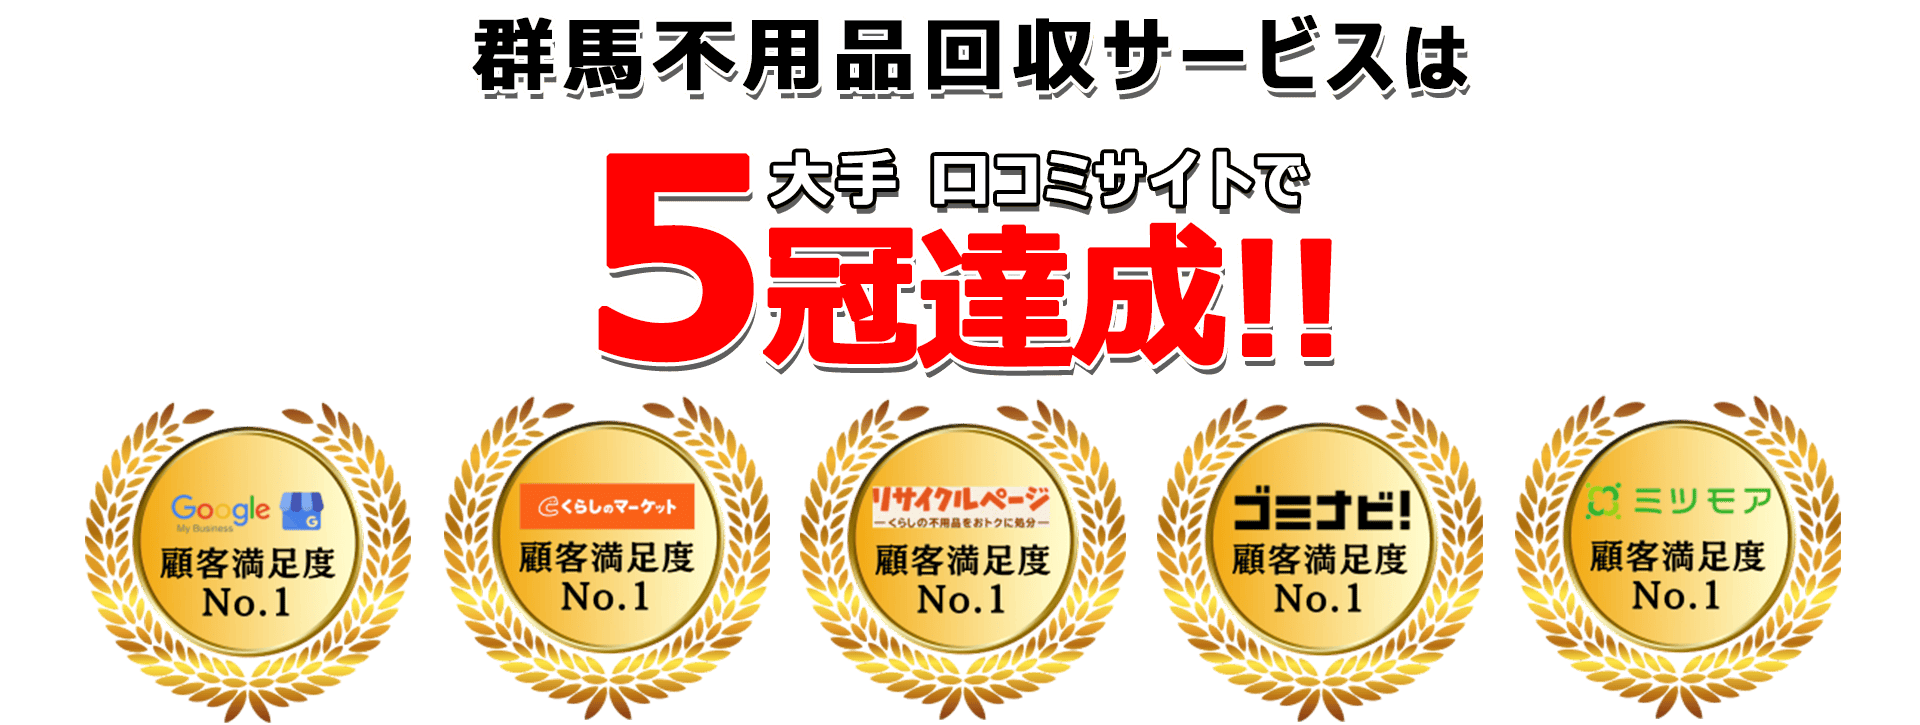 日本不用品回収サービスは口コミサイトで3年連続最高評価を獲得